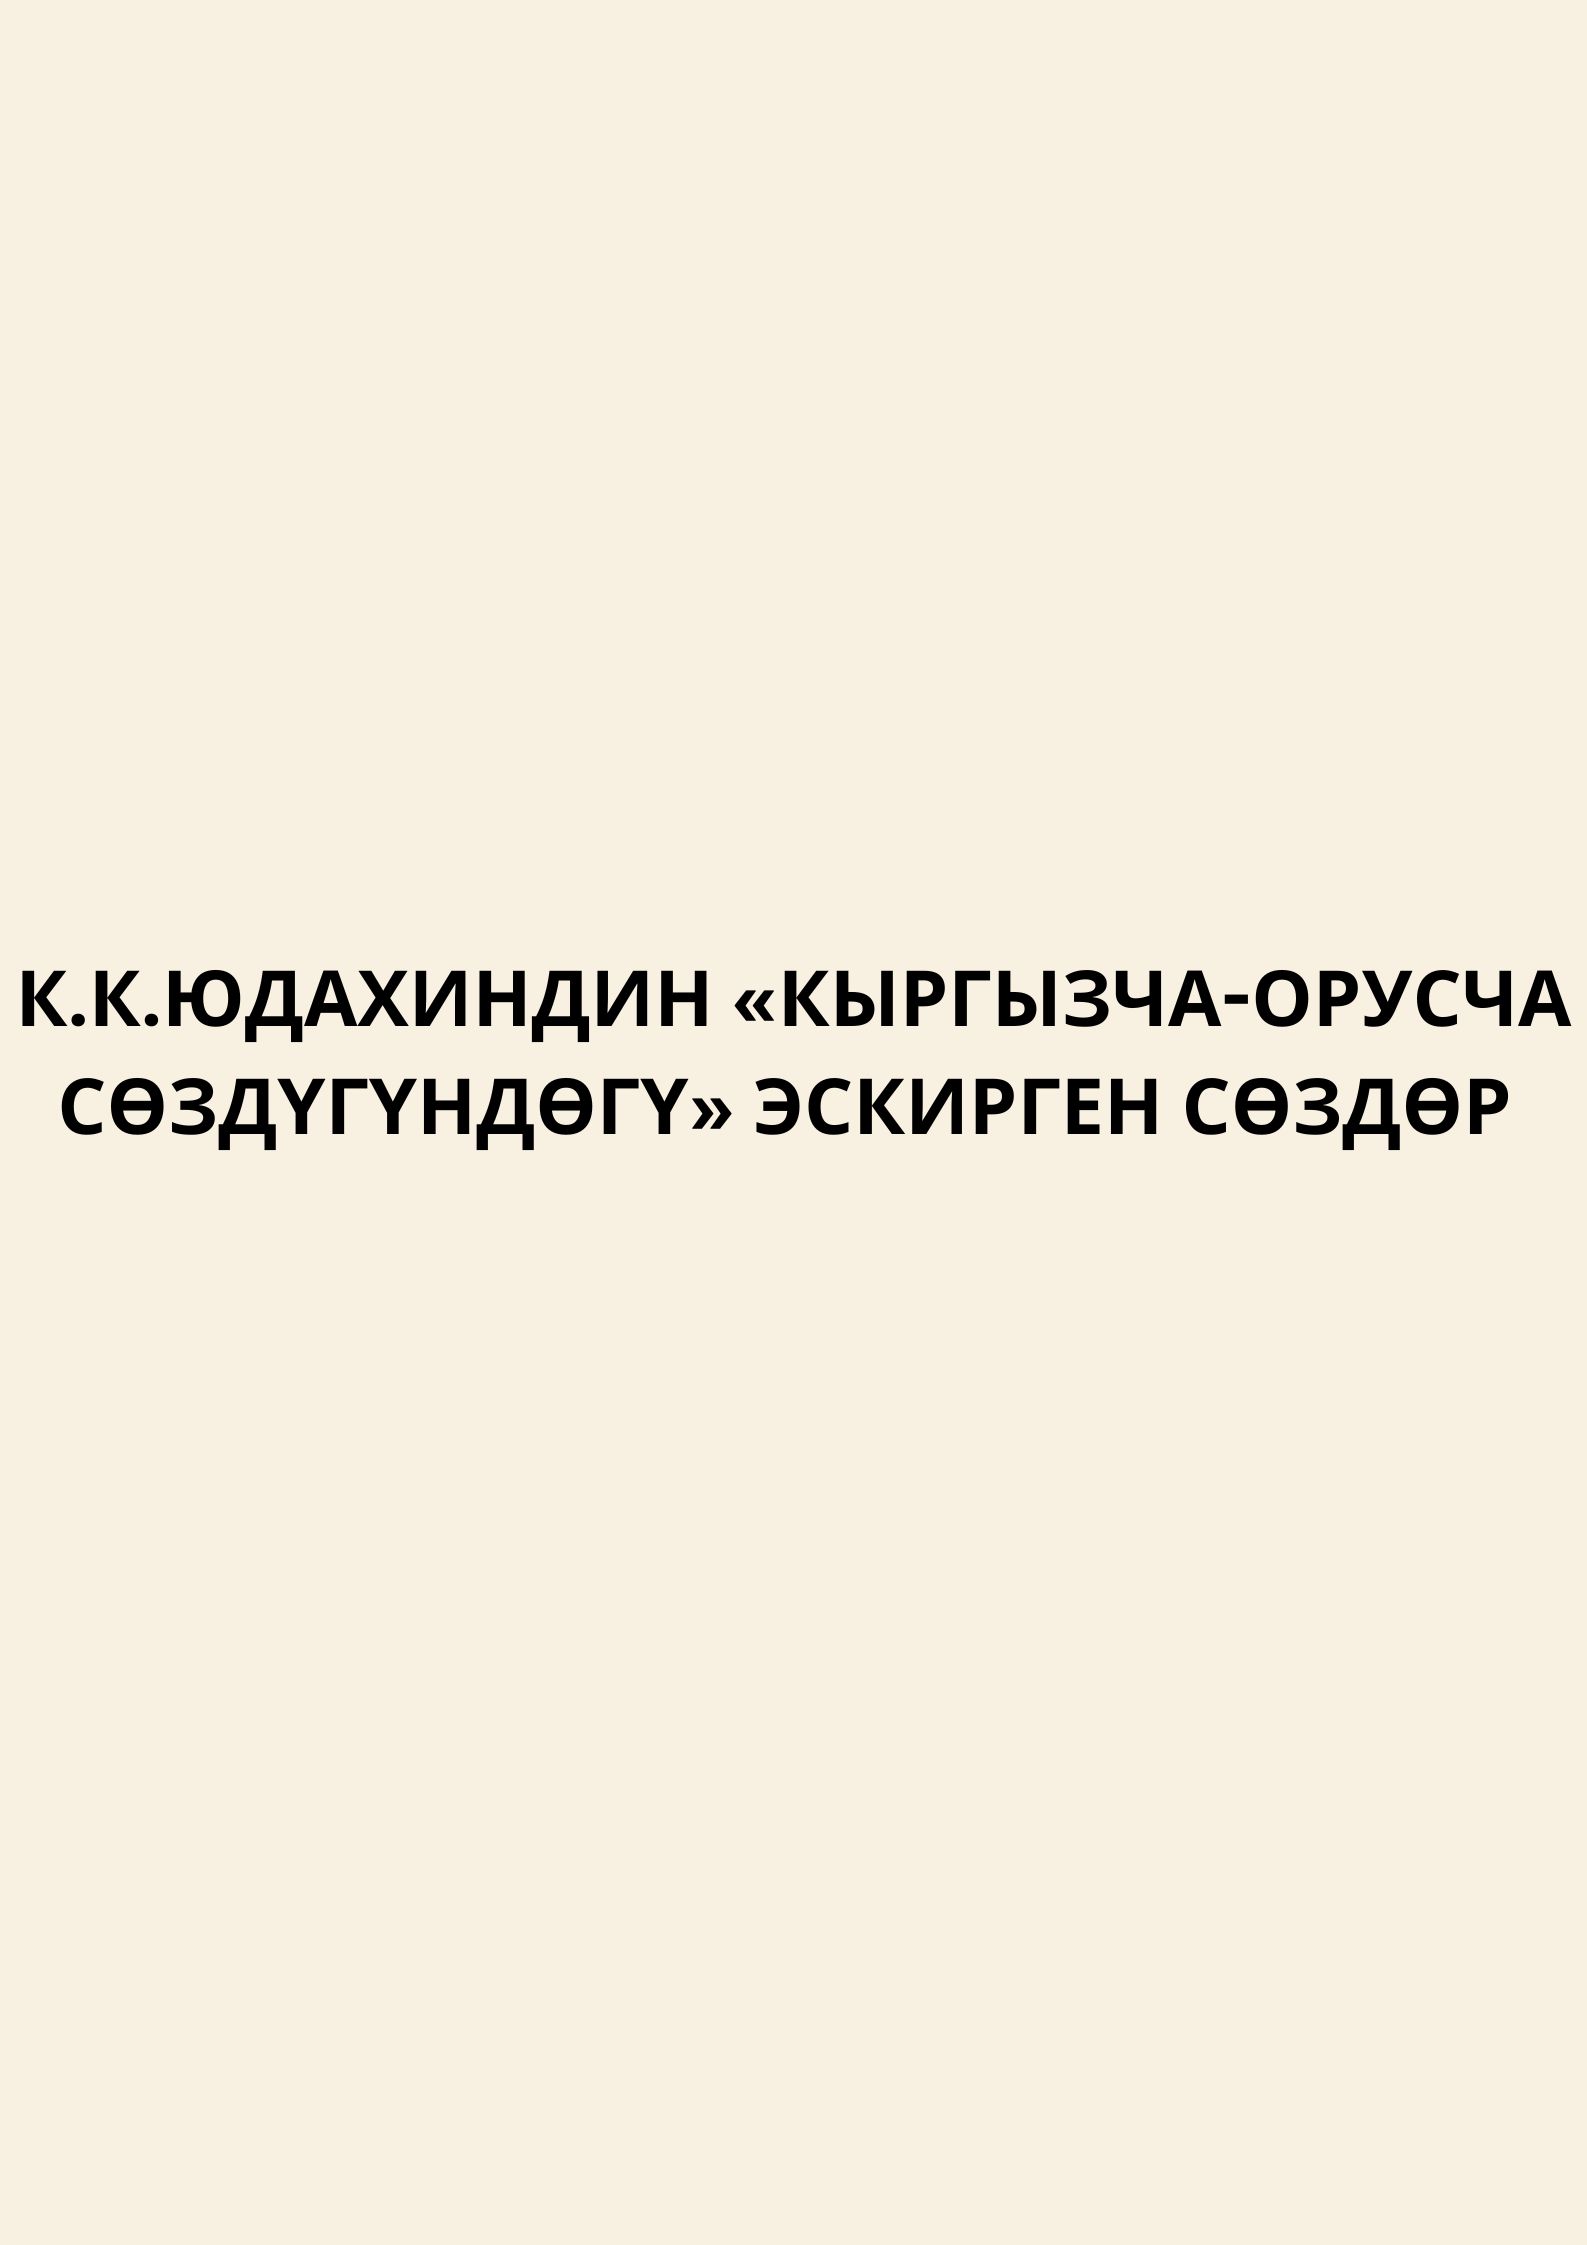 Архаизмы в «Кыргызско-русском словаре» К. К. Юдахина